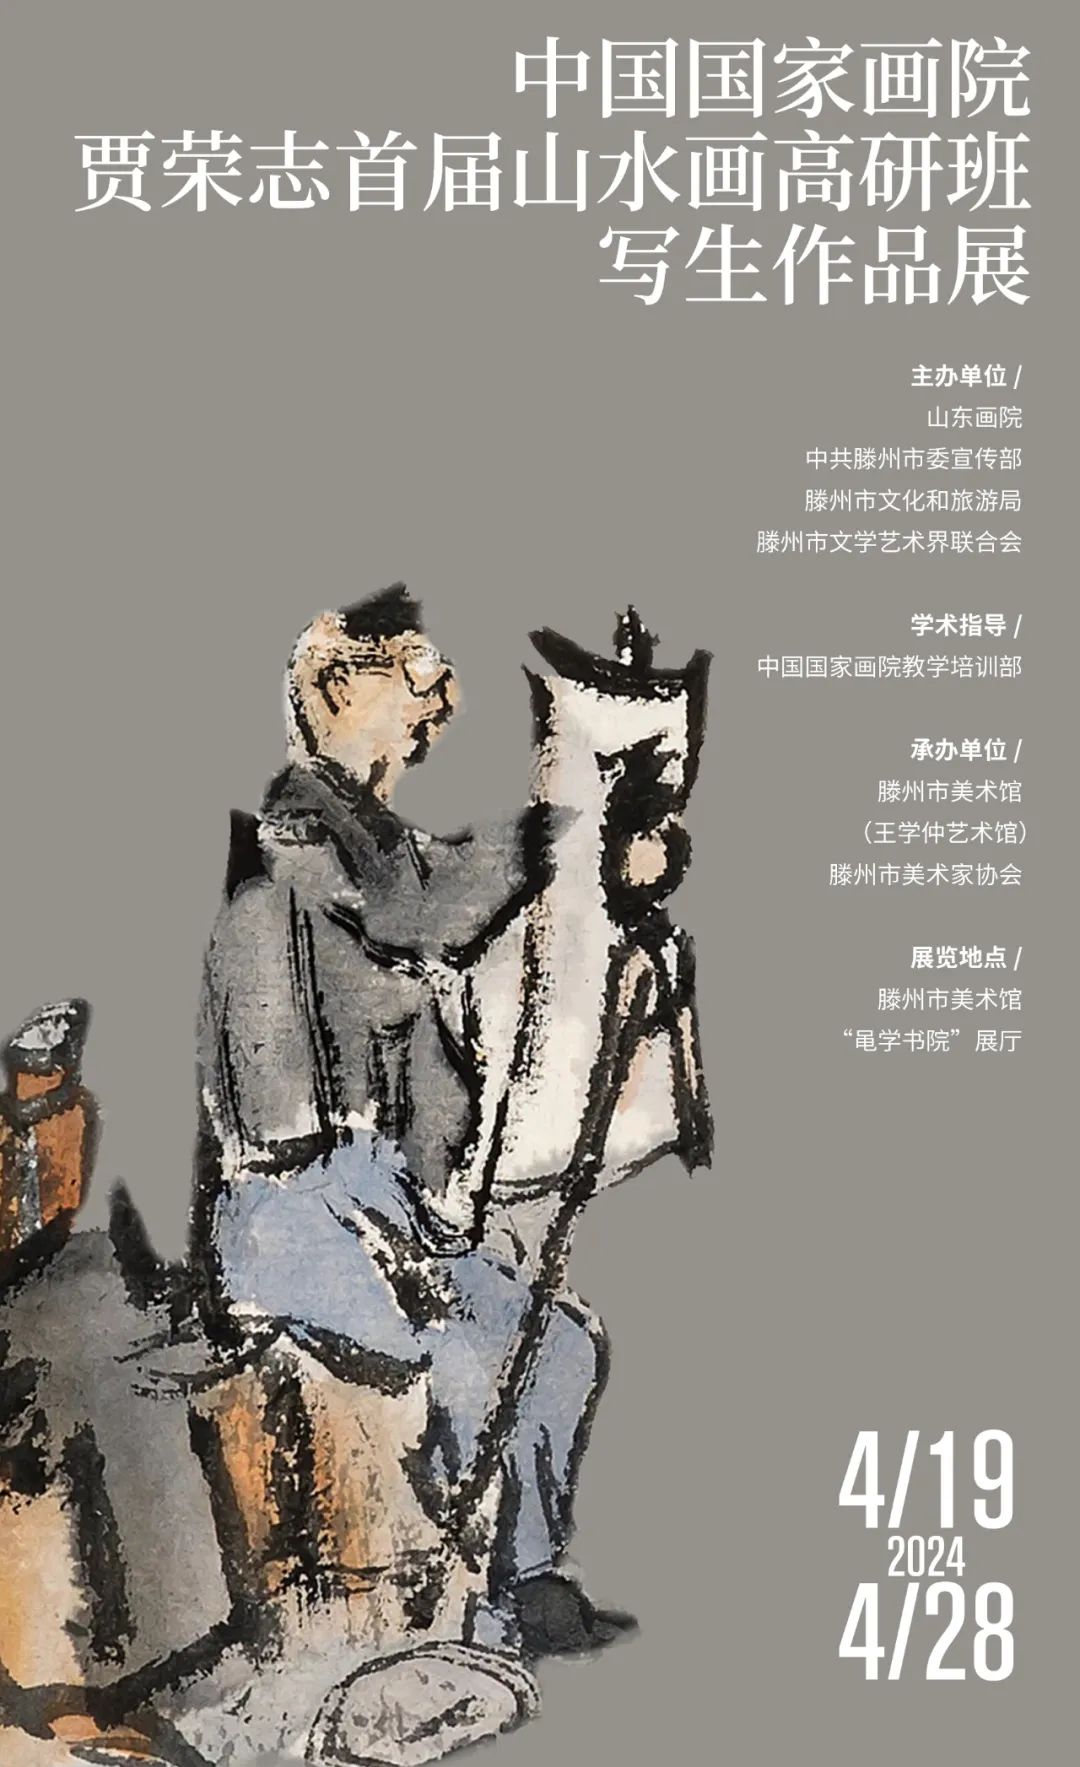 “中国国家画院贾荣志首届山水画高研班写生作品展”将于4月19日在枣庄滕州市美术馆开幕